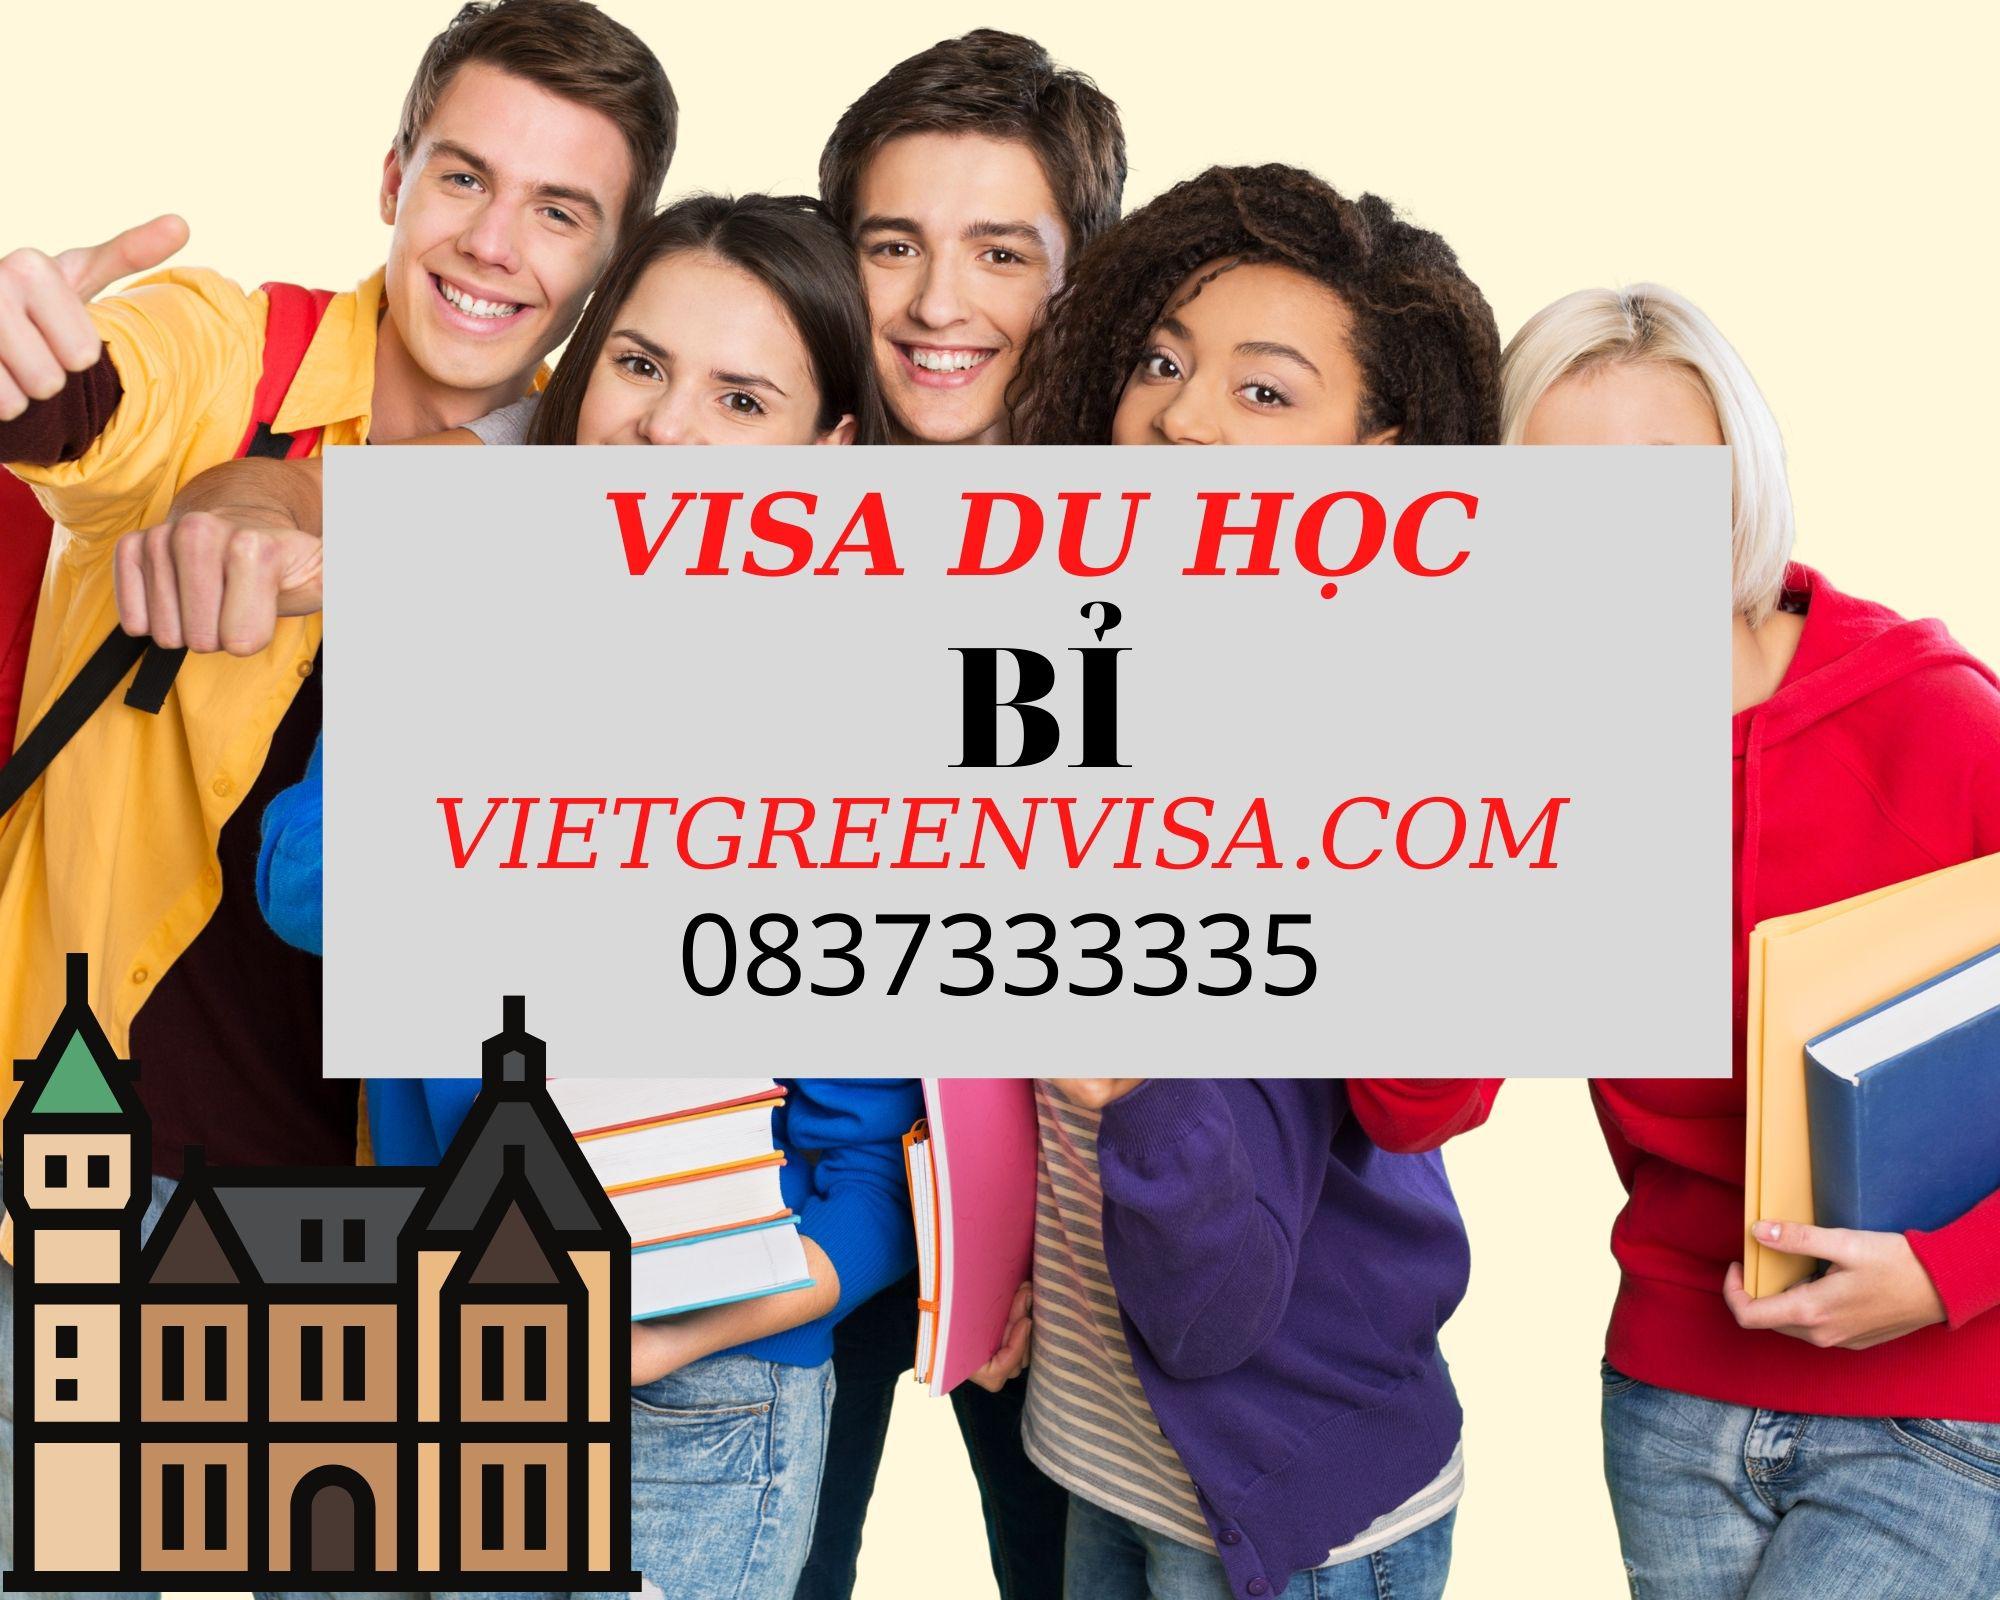 Dịch vụ hỗ trợ visa du học Bỉ trọn gói| Du lịch Xanh